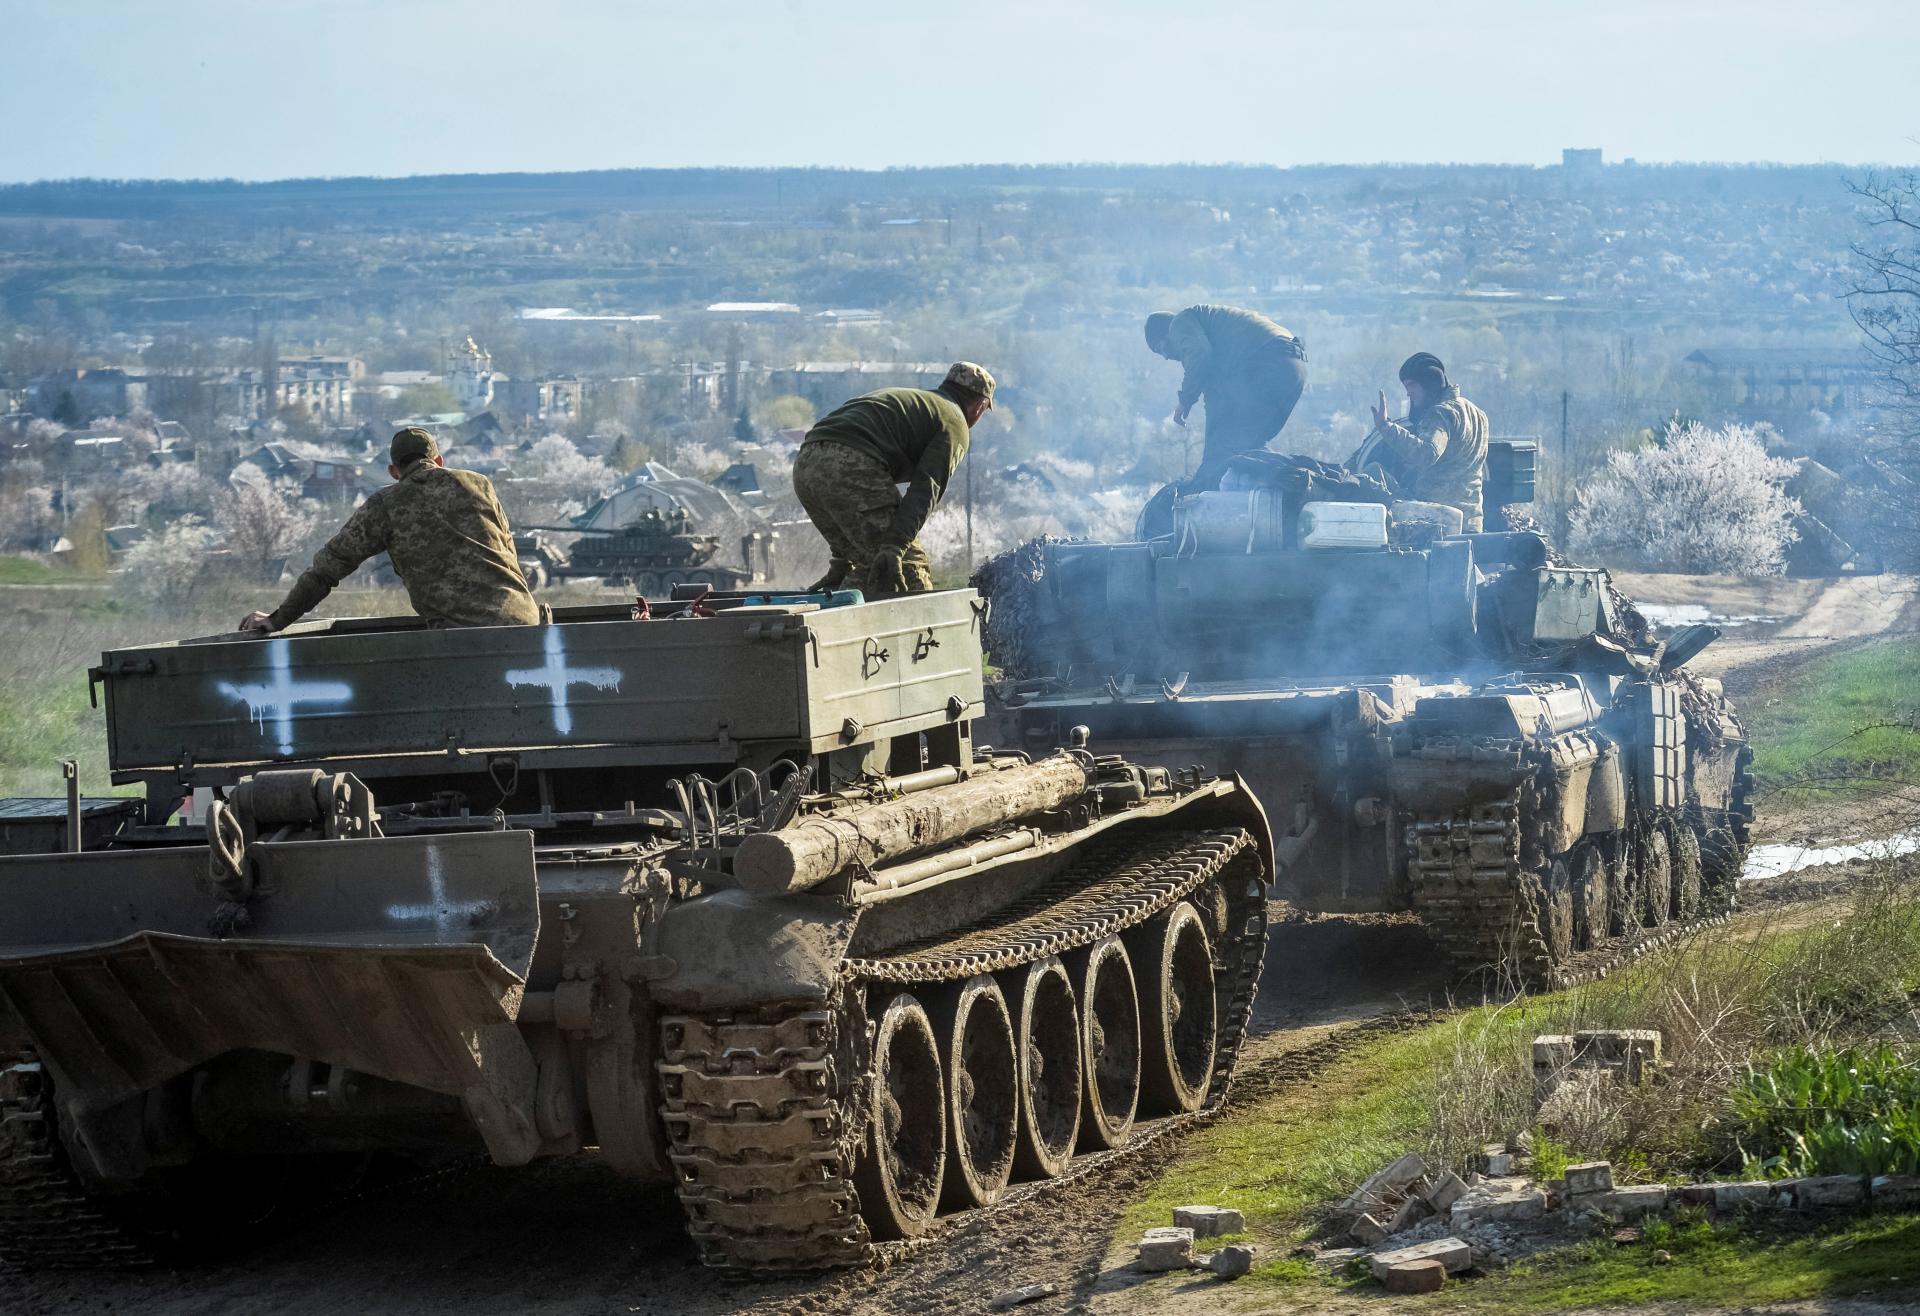 Začína sa očakávaná protiofenzíva? Ukrajinci prekročili Dneper, tvrdia západní analytici aj ruskí blogeri​